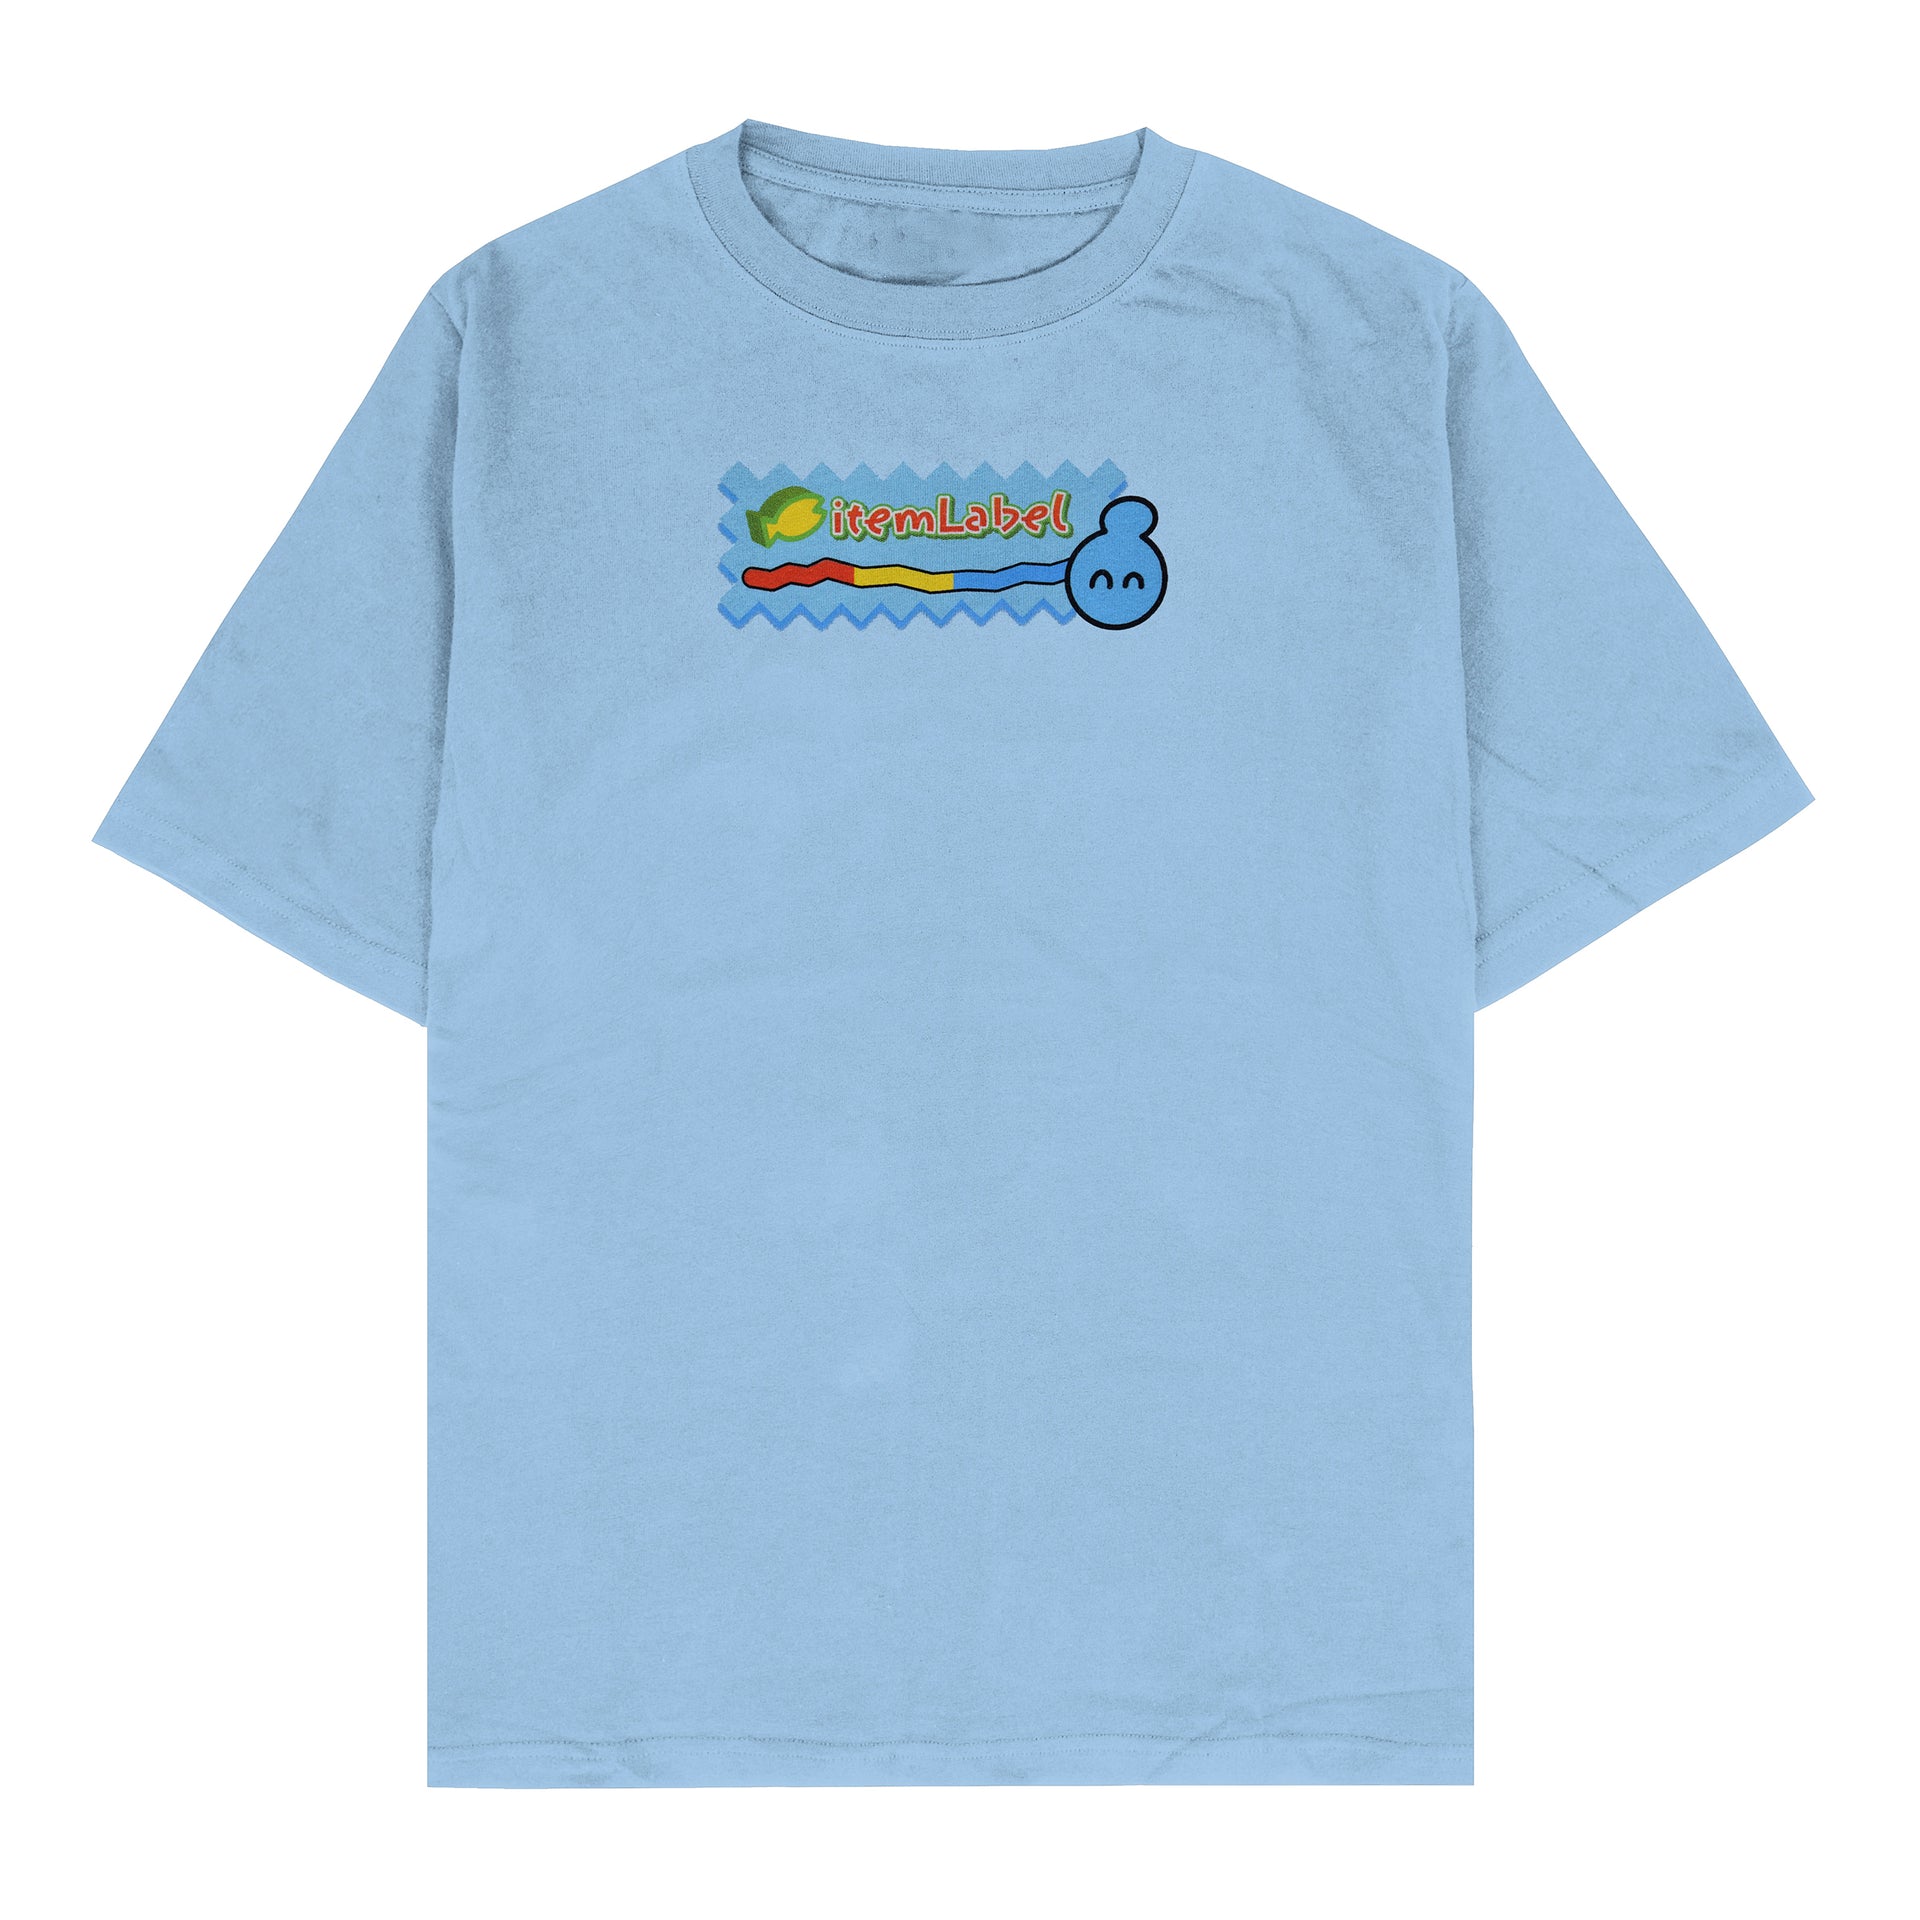 tri-color worm logo shirt